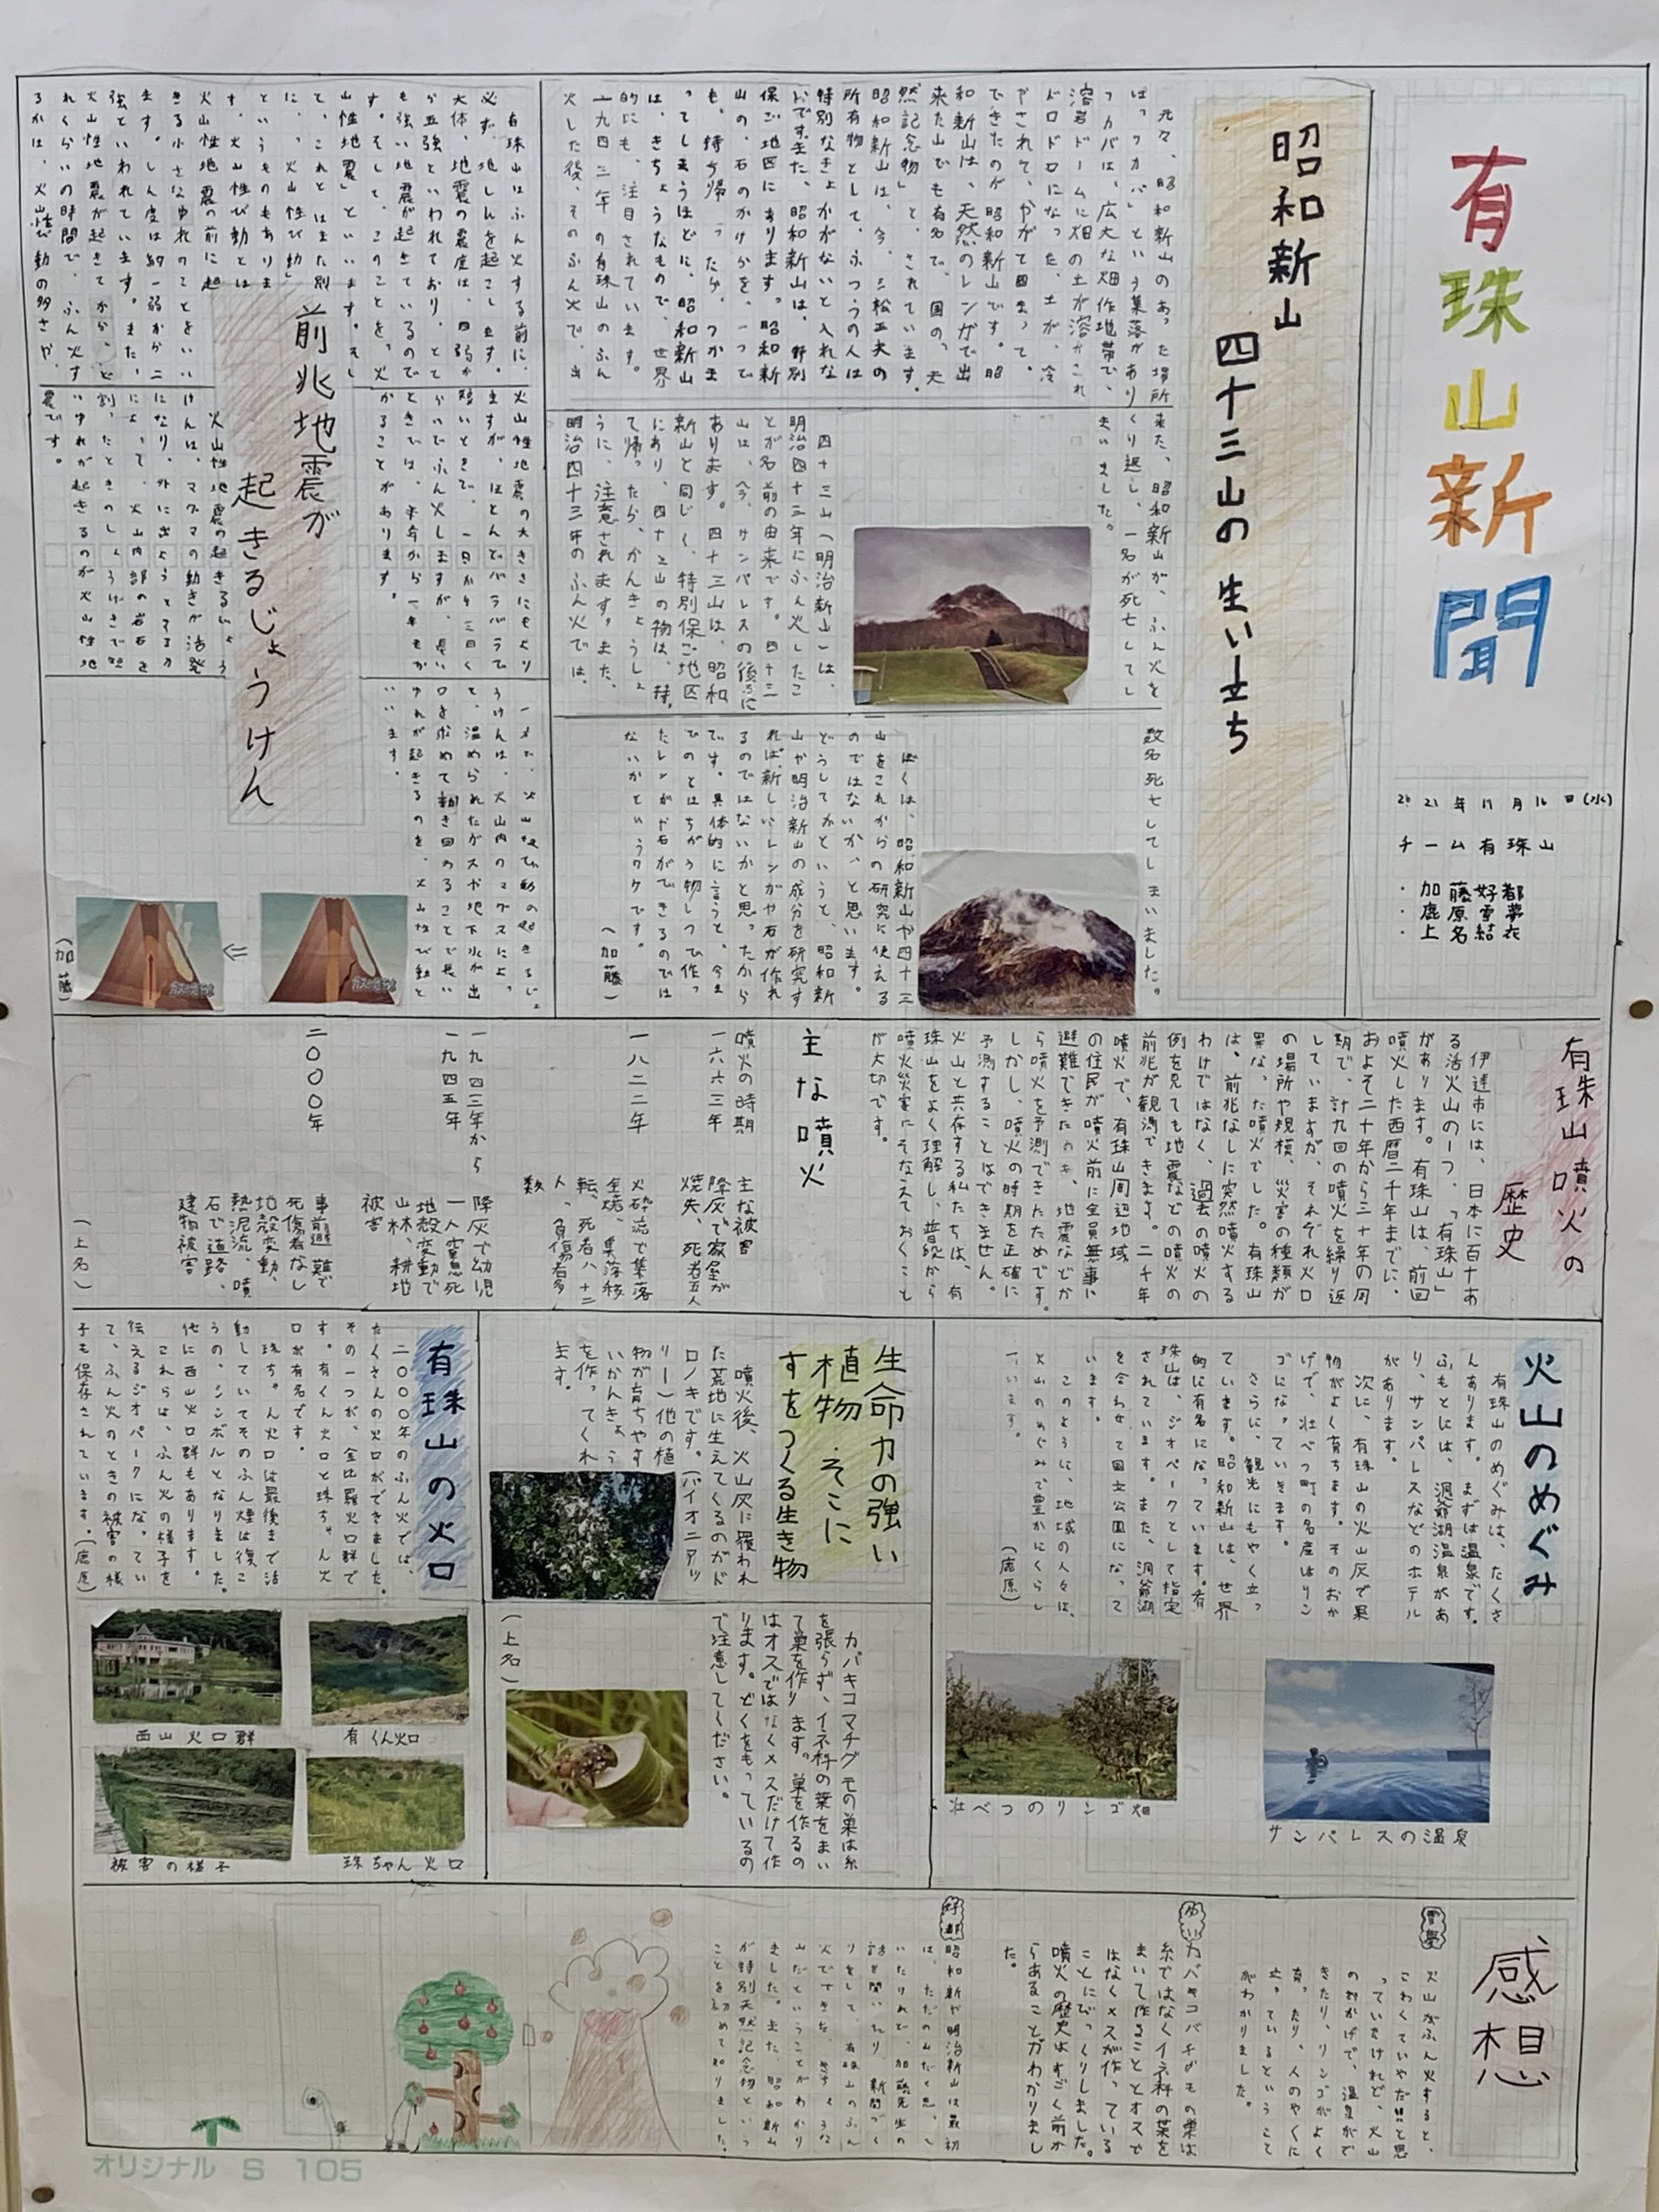 壁新聞「有珠山新聞」 (JPG 889KB)